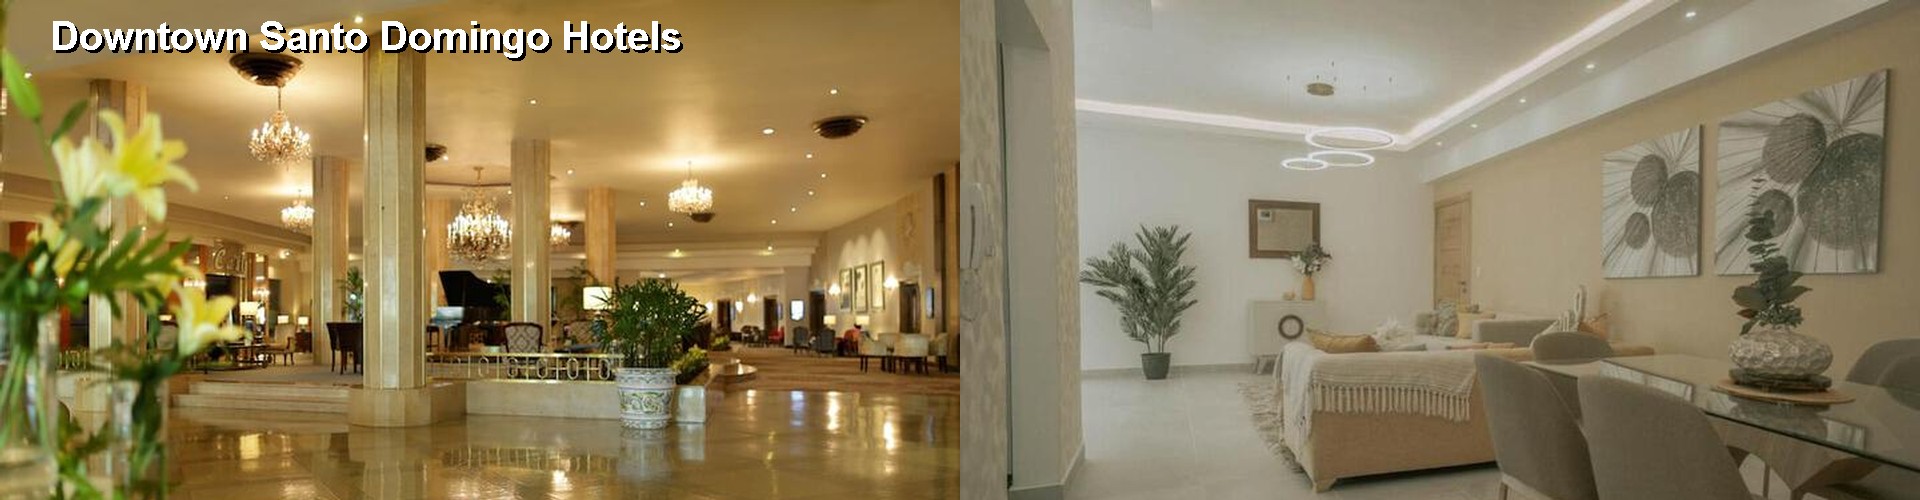 3 Best Hotels near Downtown Santo Domingo